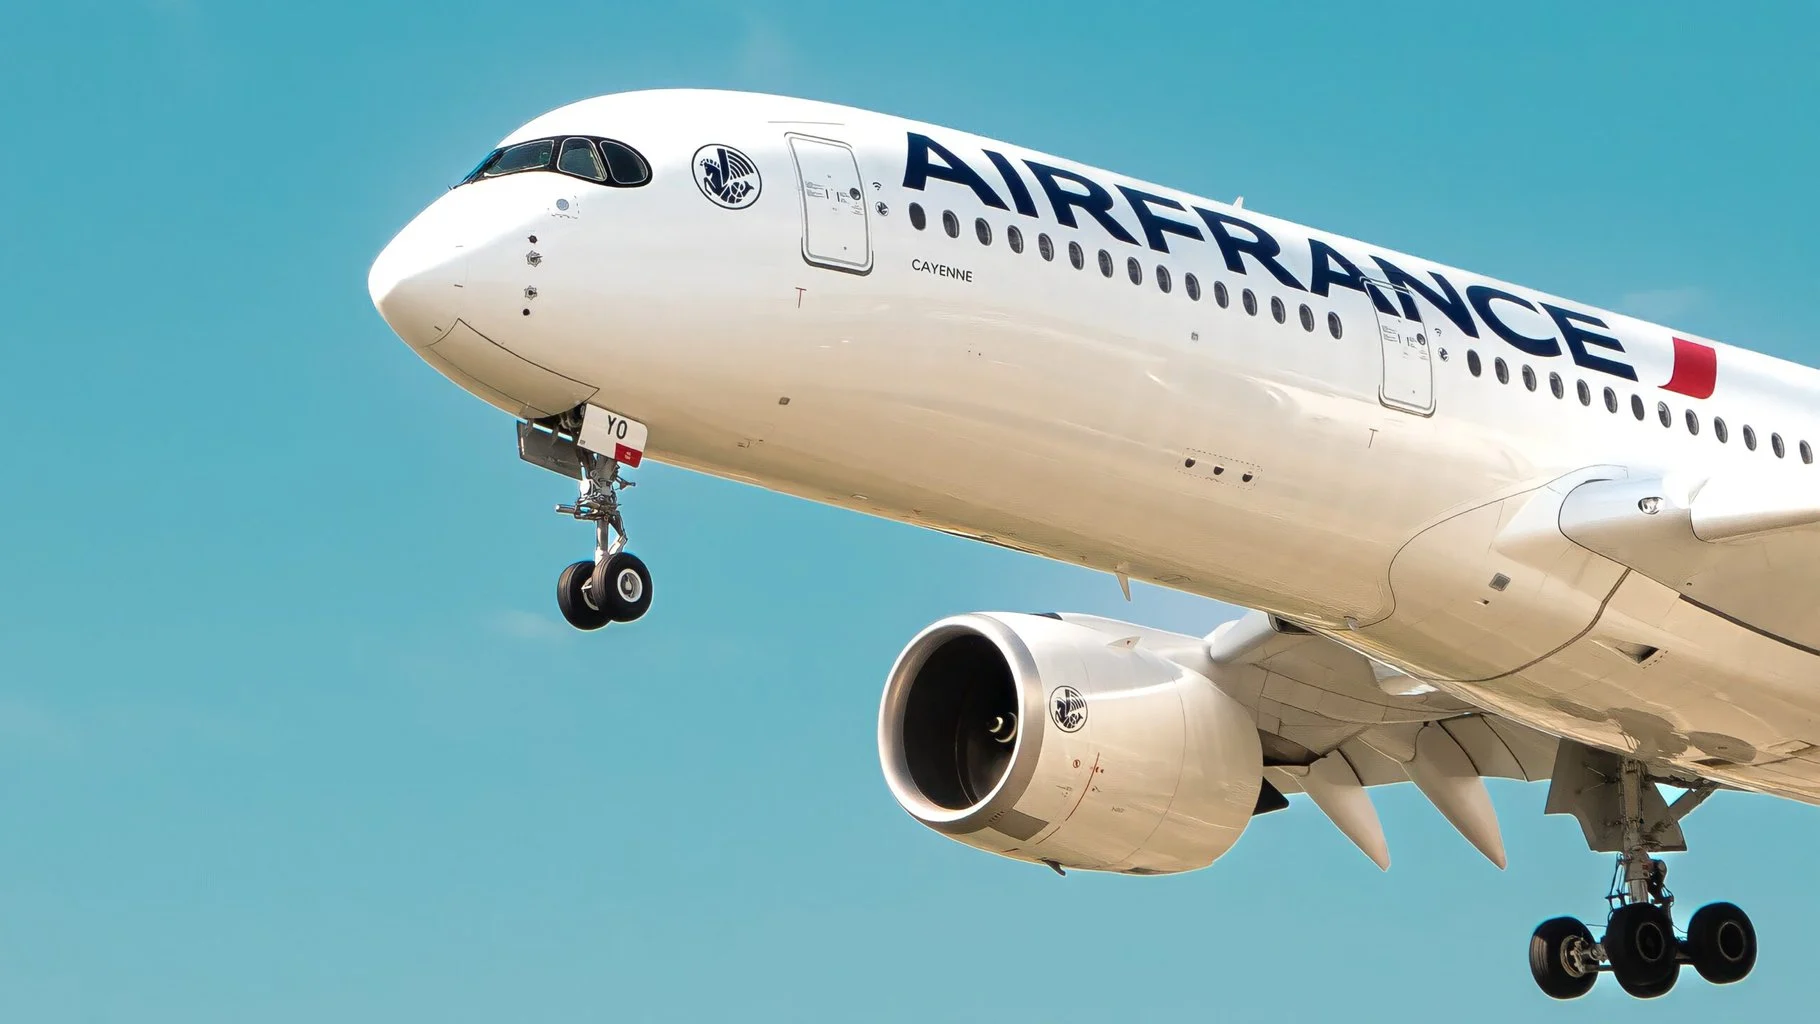 Niger : Air France suspend ses vols